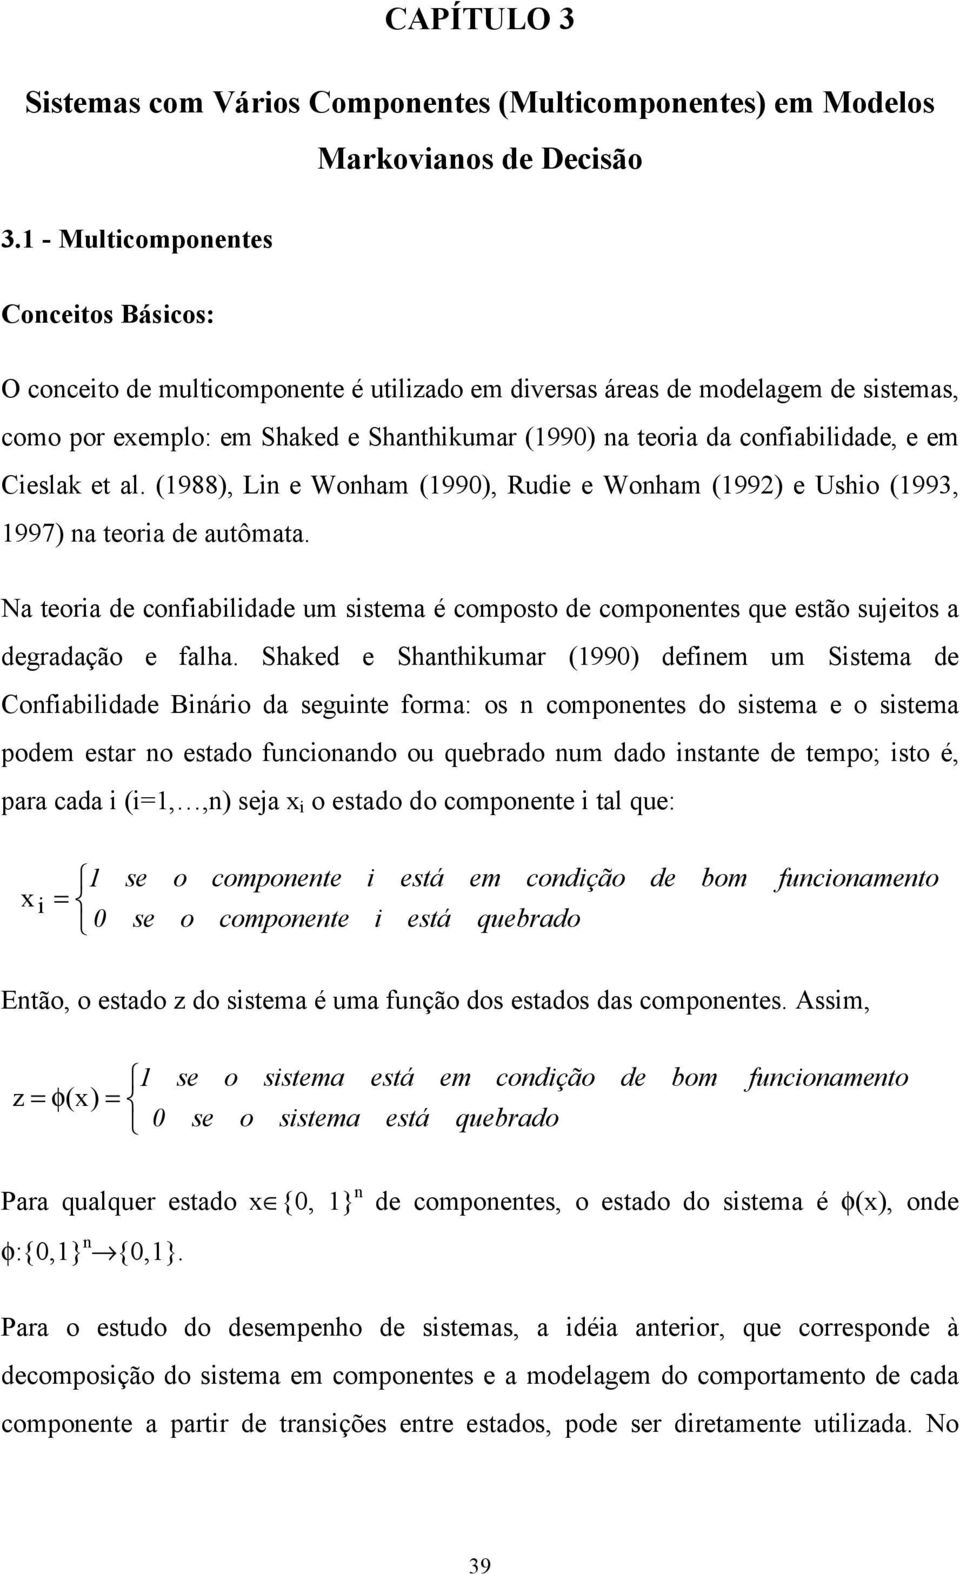 confiabilidade, e em Cieslak et al. (1988), Lin e Wonham (1990), Rudie e Wonham (1992) e Ushio (1993, 1997) na teoria de autômata.